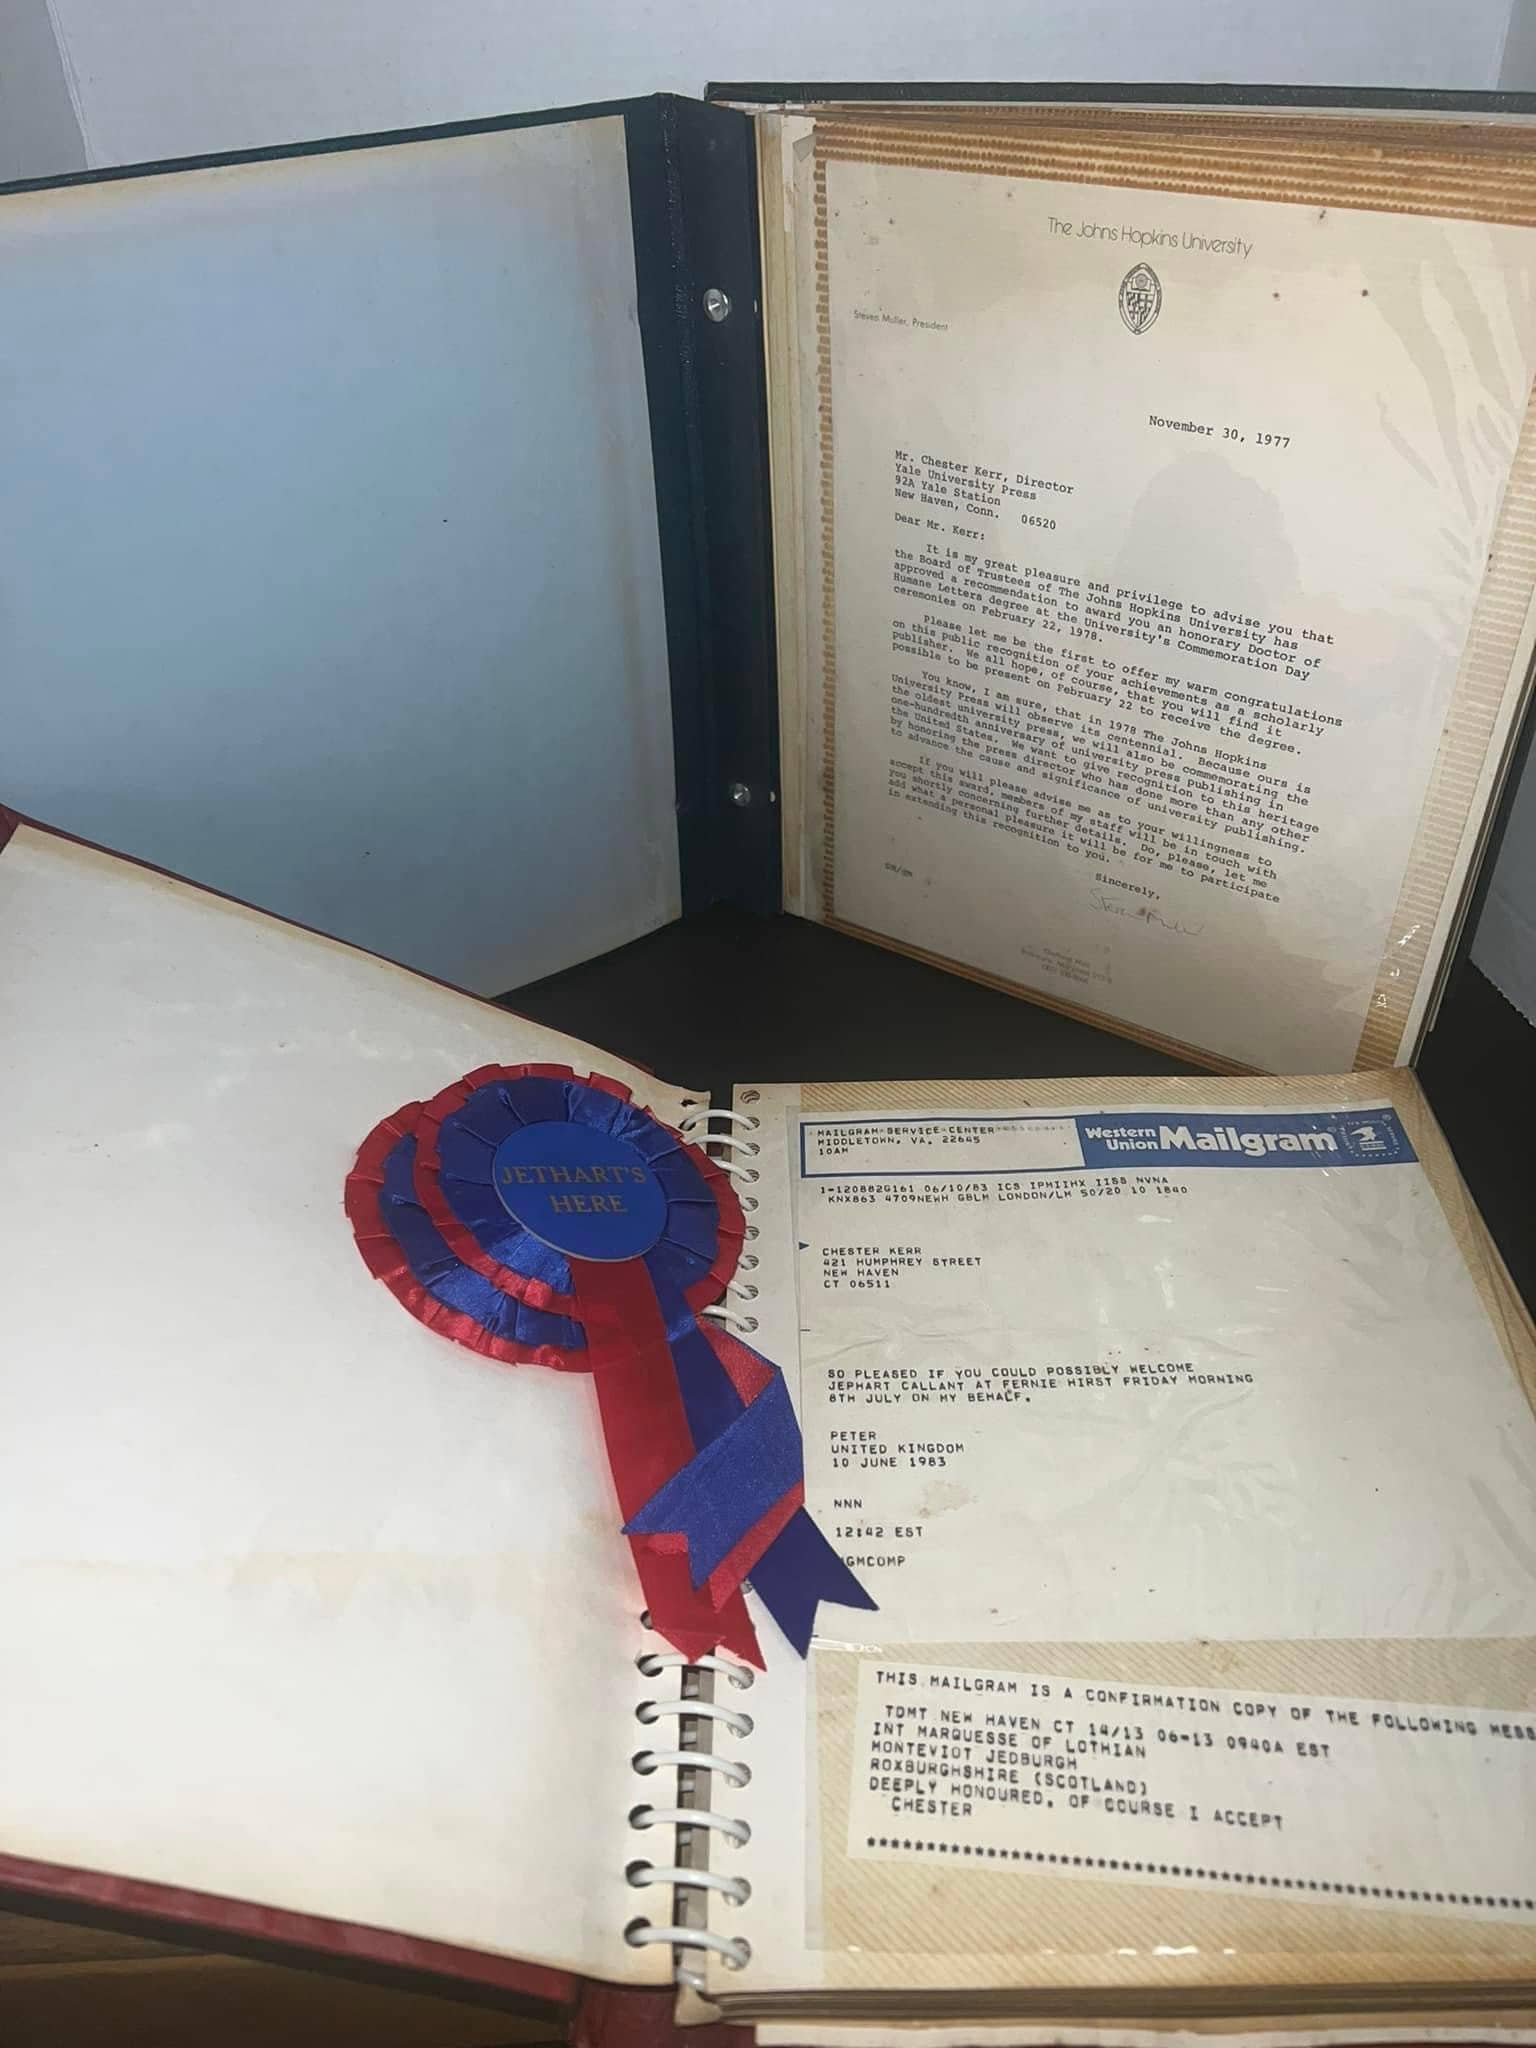 Vintage genealogy document Collection for Mr Chester kerr 1978-1984 John Hopkins , jethart callant’s festival